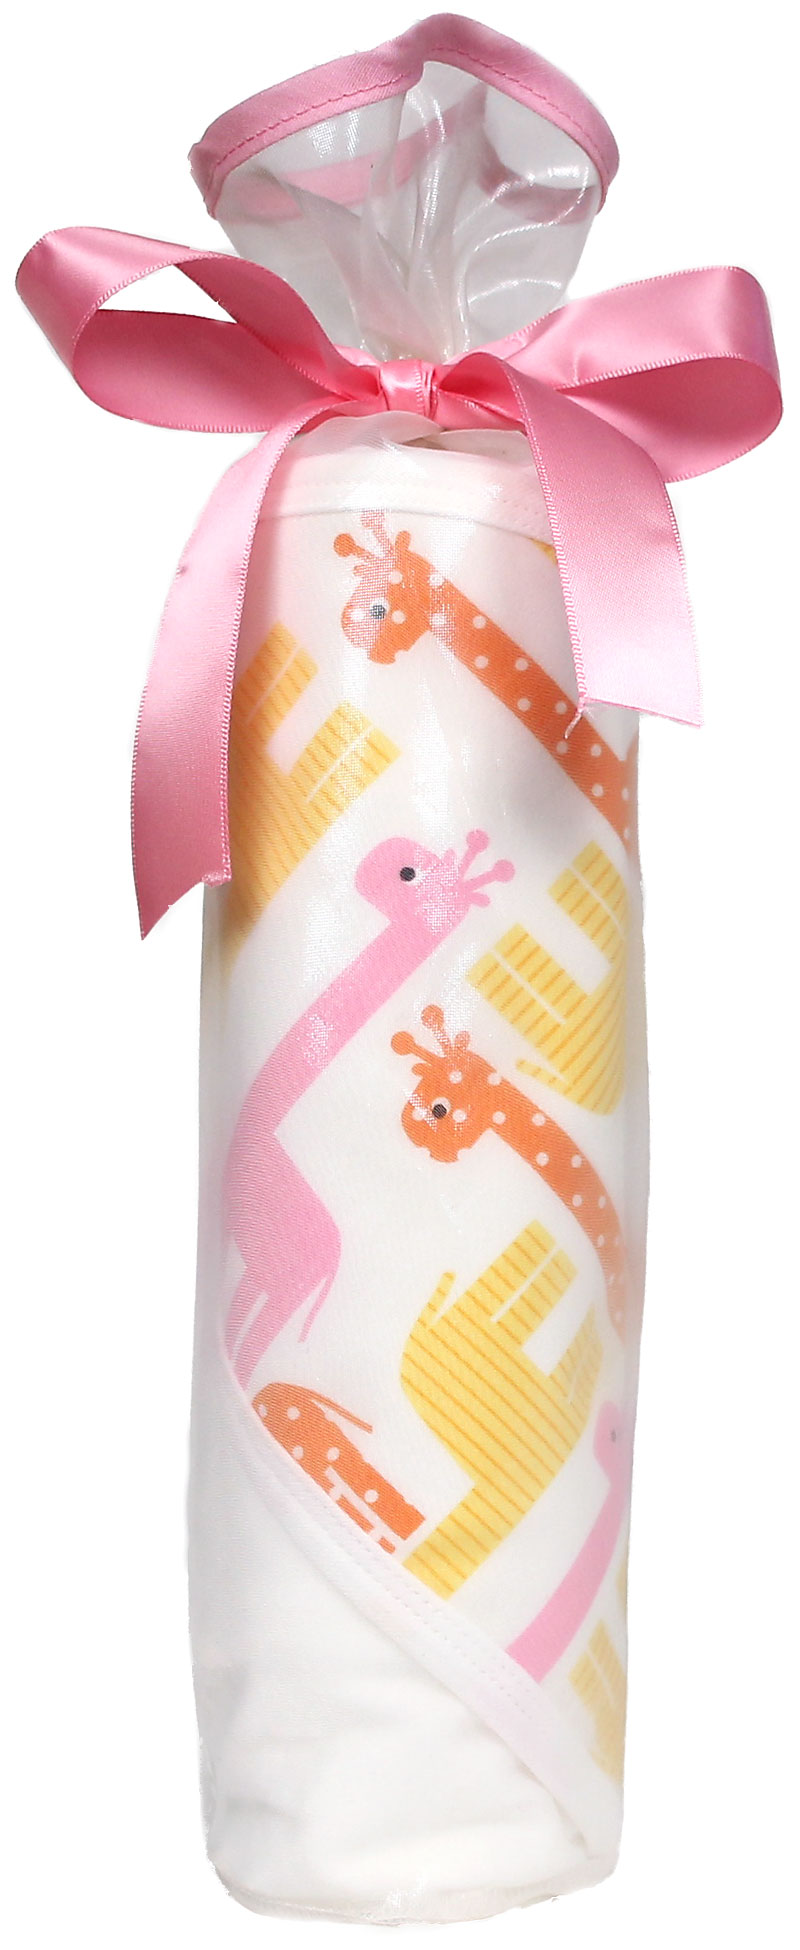 Treasured Giraffe Blanket Girl Gift Set